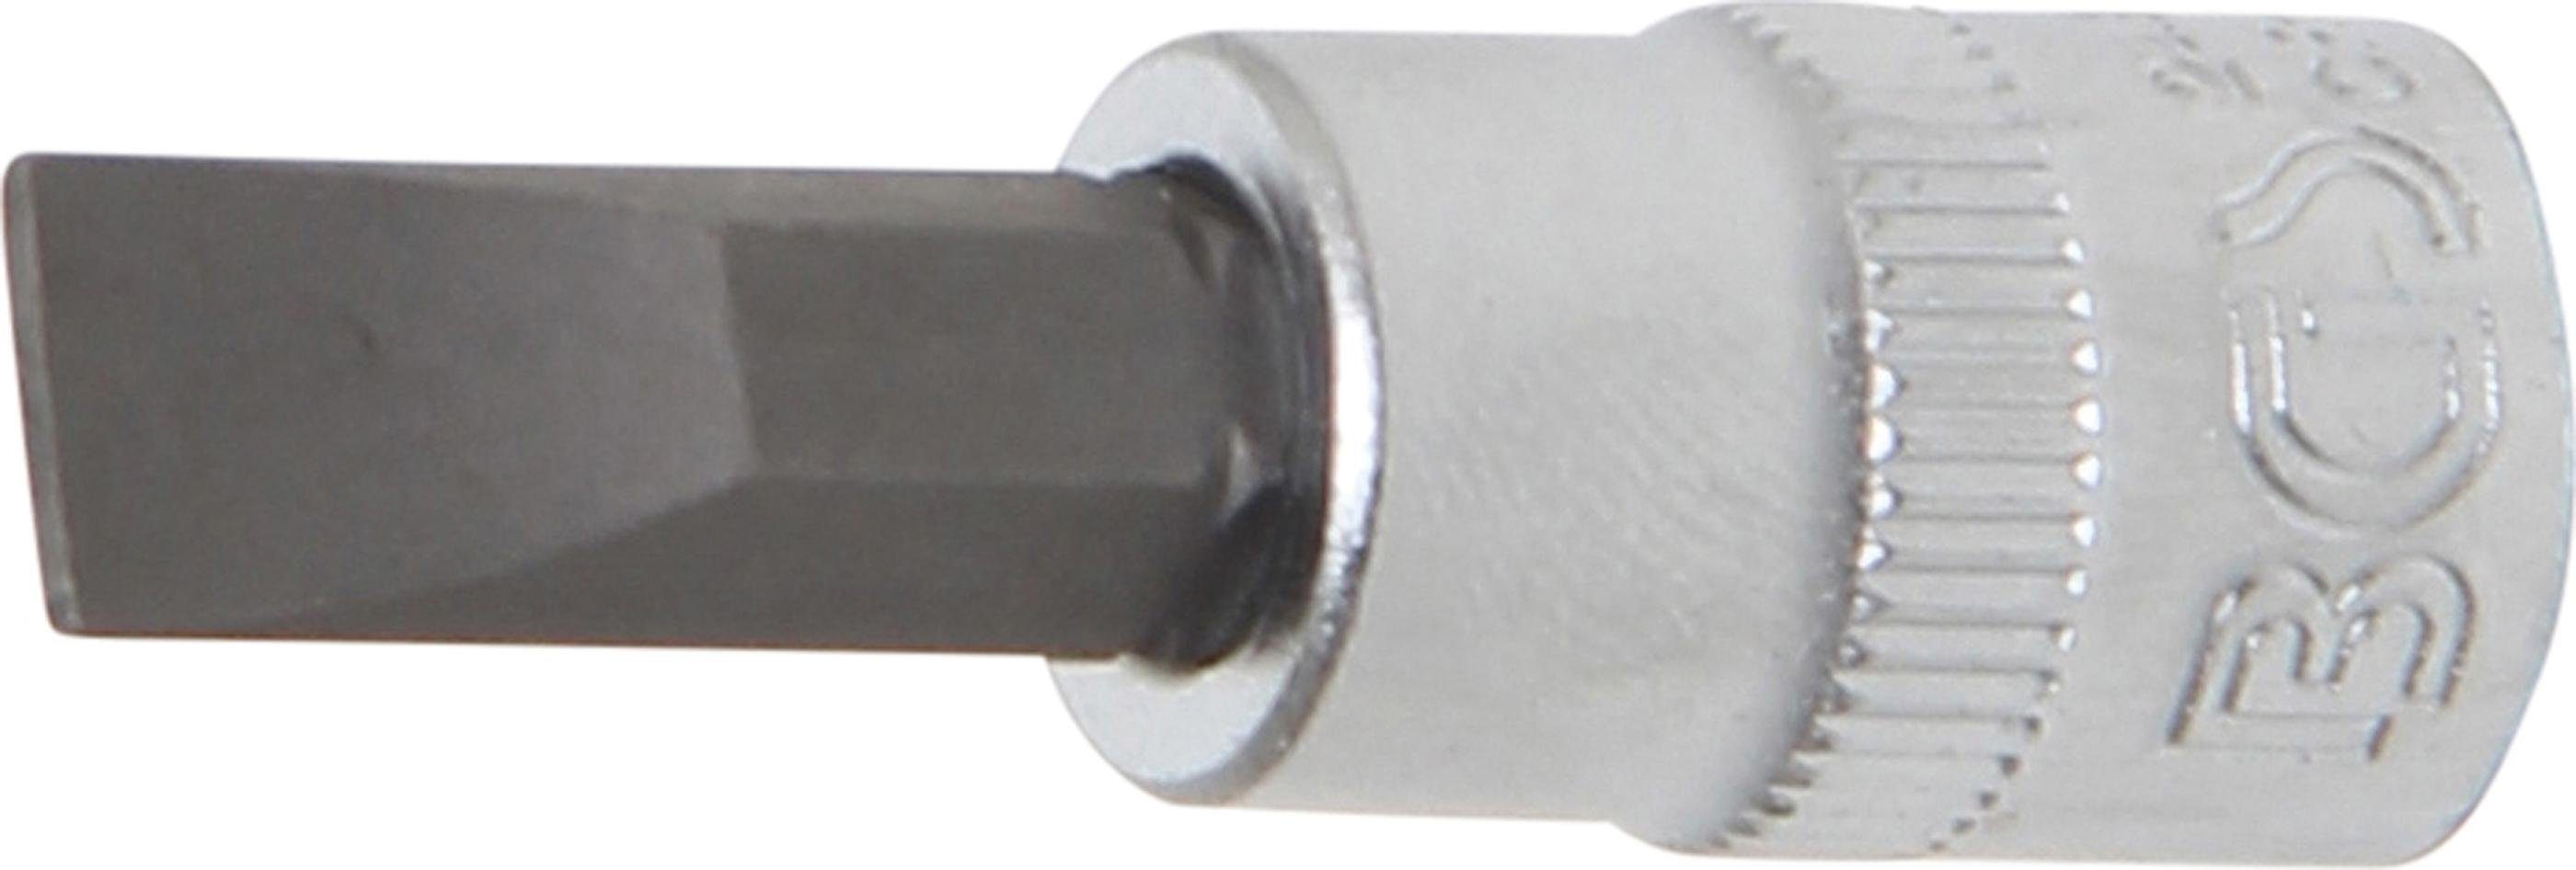 BGS technic Bit-Schraubendreher Bit-Einsatz, Antrieb Innenvierkant 6,3 mm (1/4), Schlitz 7 mm